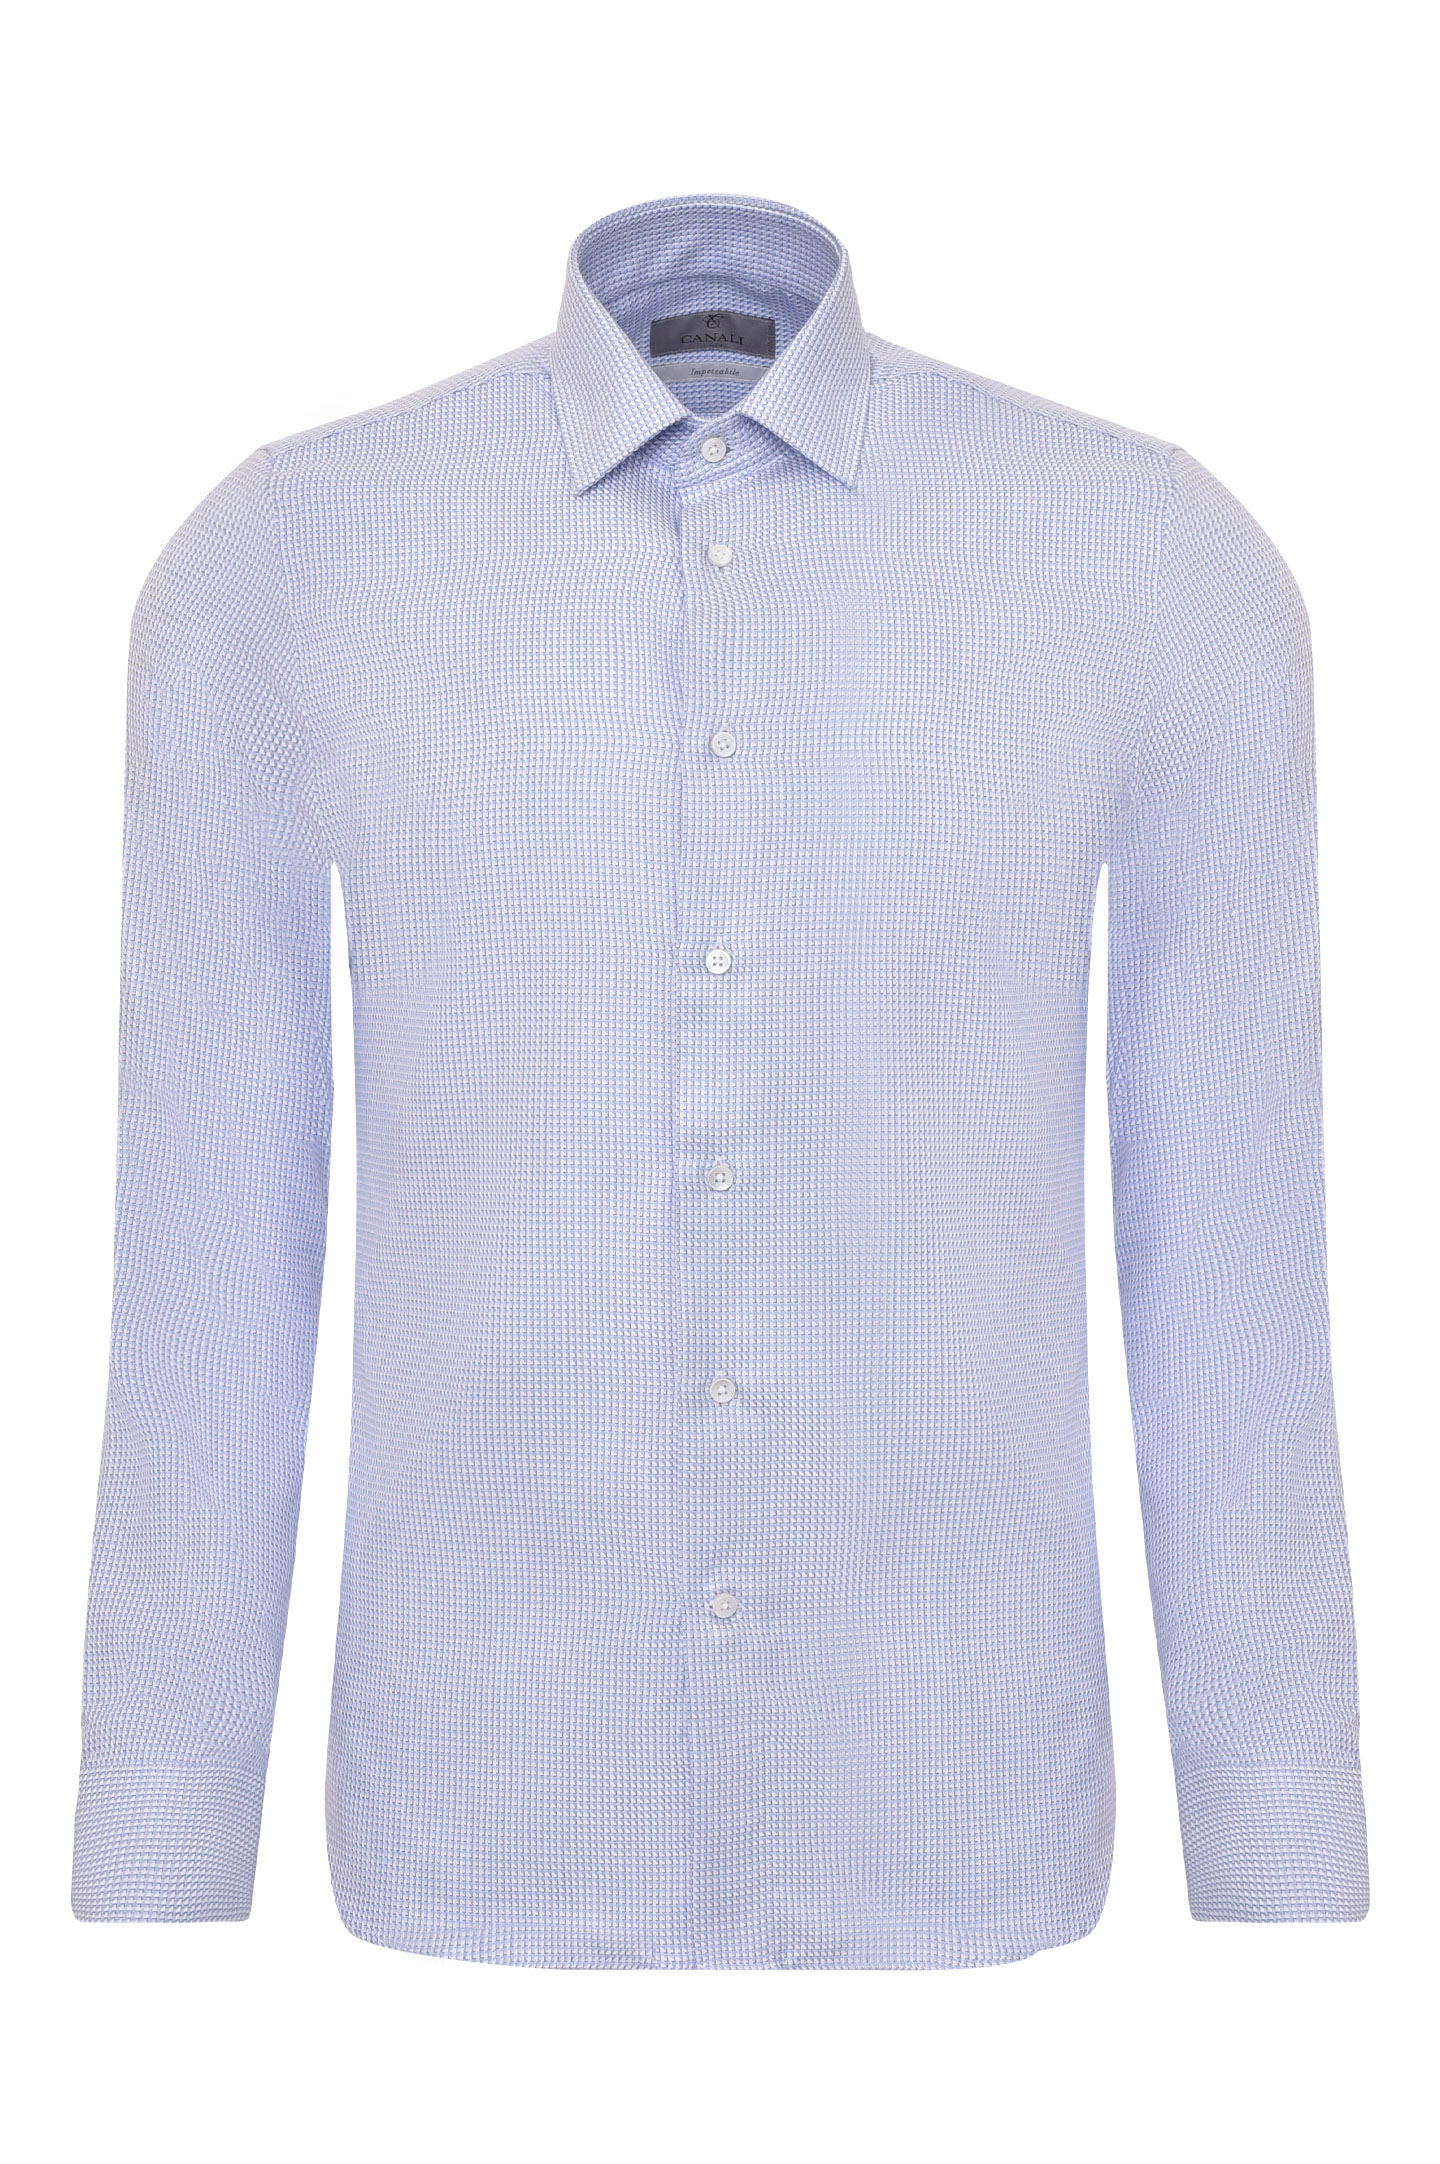 Рубашка CANALI GR02338/401, цвет: Белый, Мужской